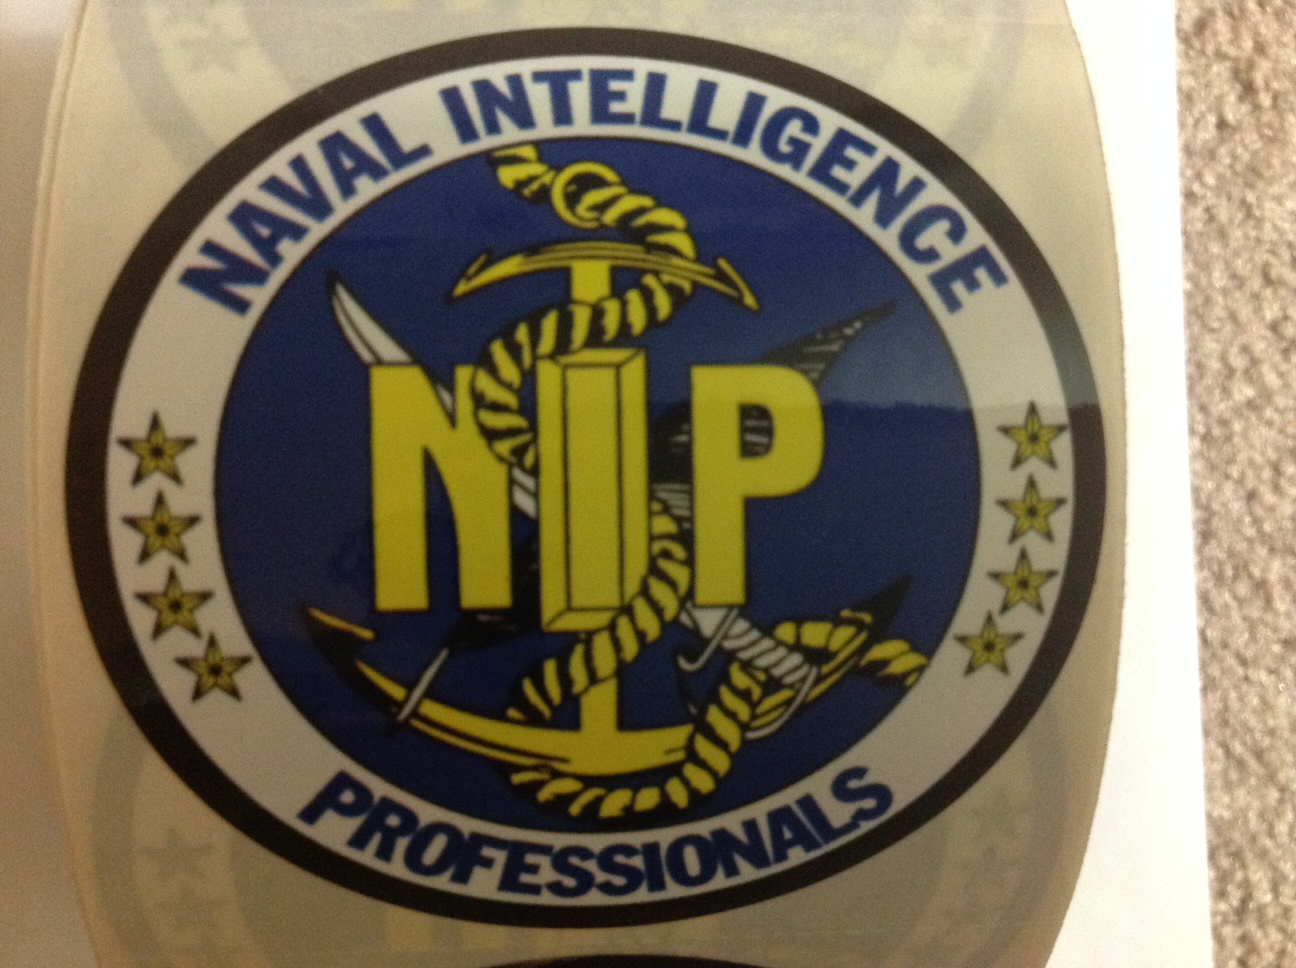 NIP Logo Decal